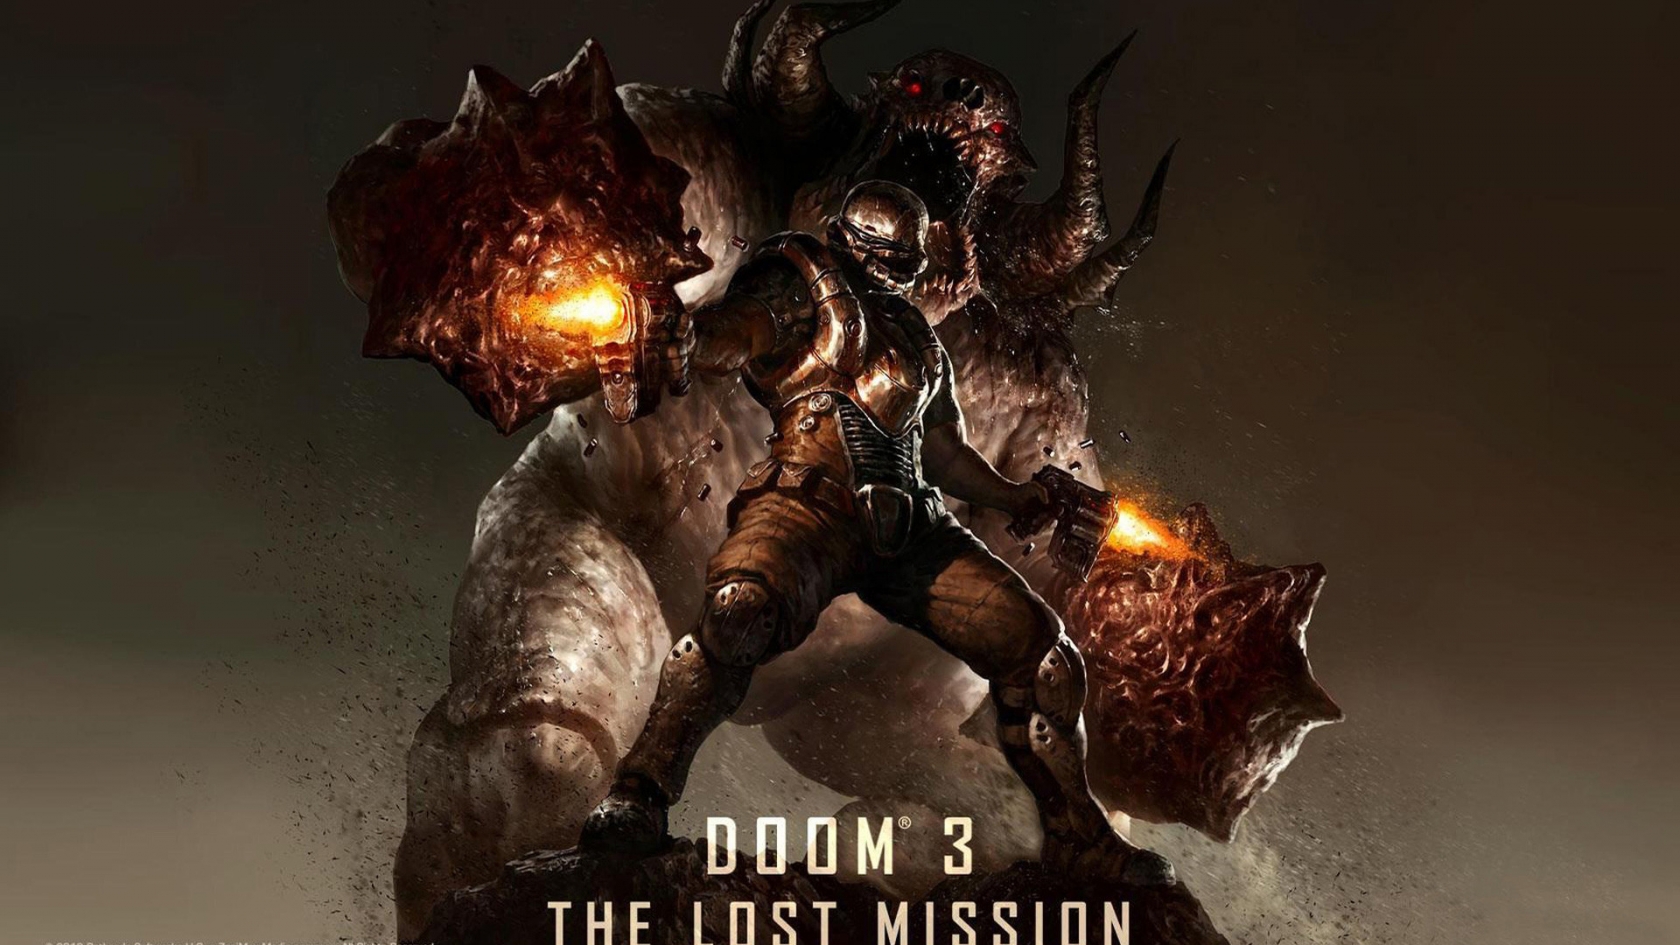 Doom 3 for 1680 x 945 HDTV resolution